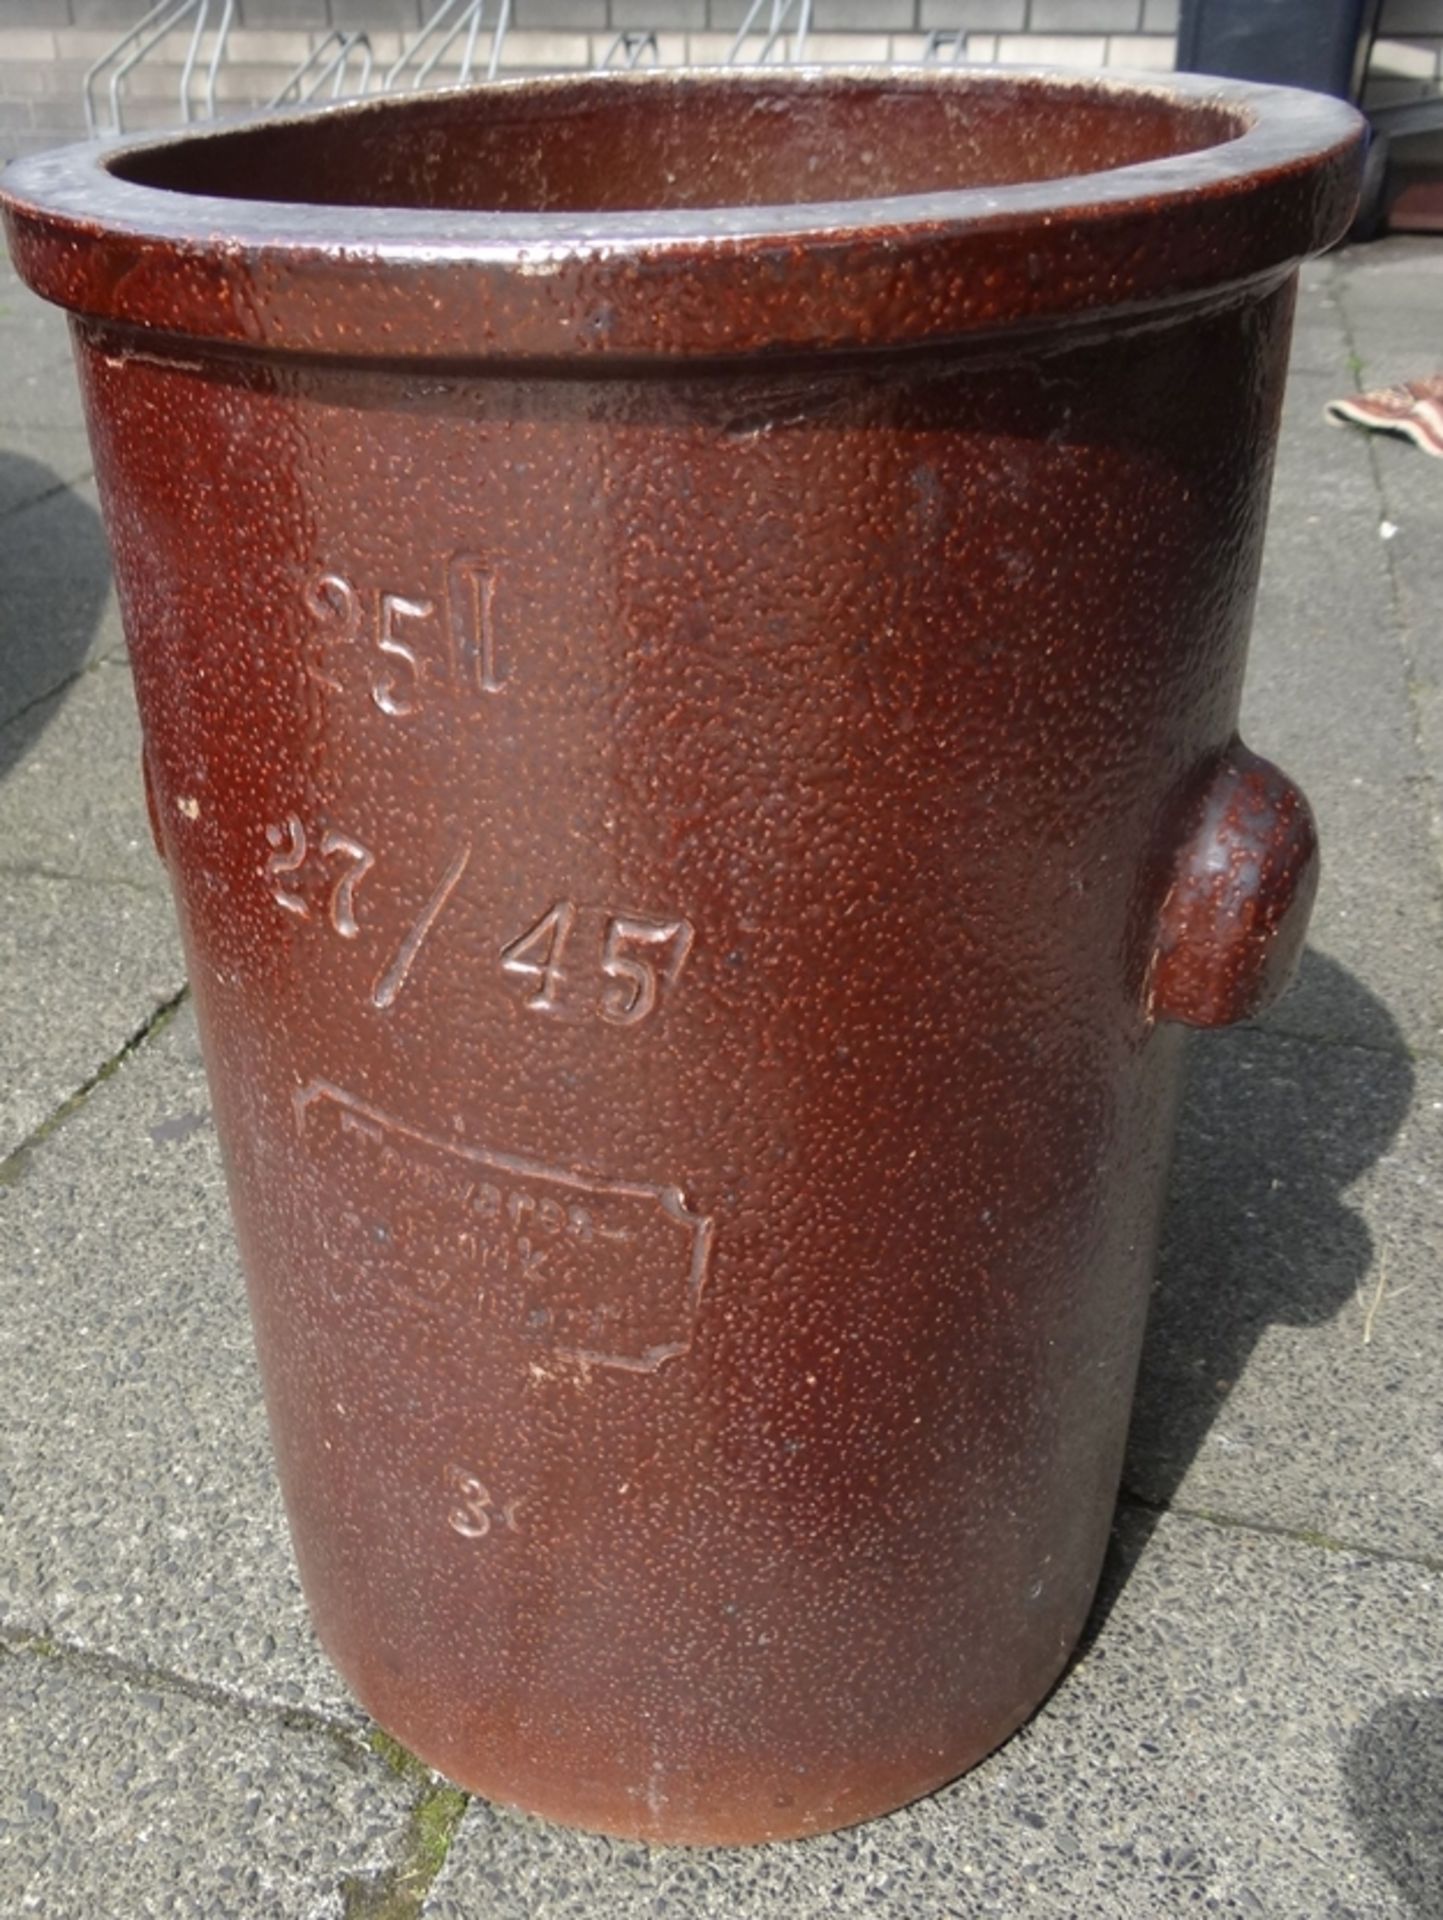 grosse 25 Liter Kruke, braunes Steinzeug, H-49x33 cm, 15,6 kg